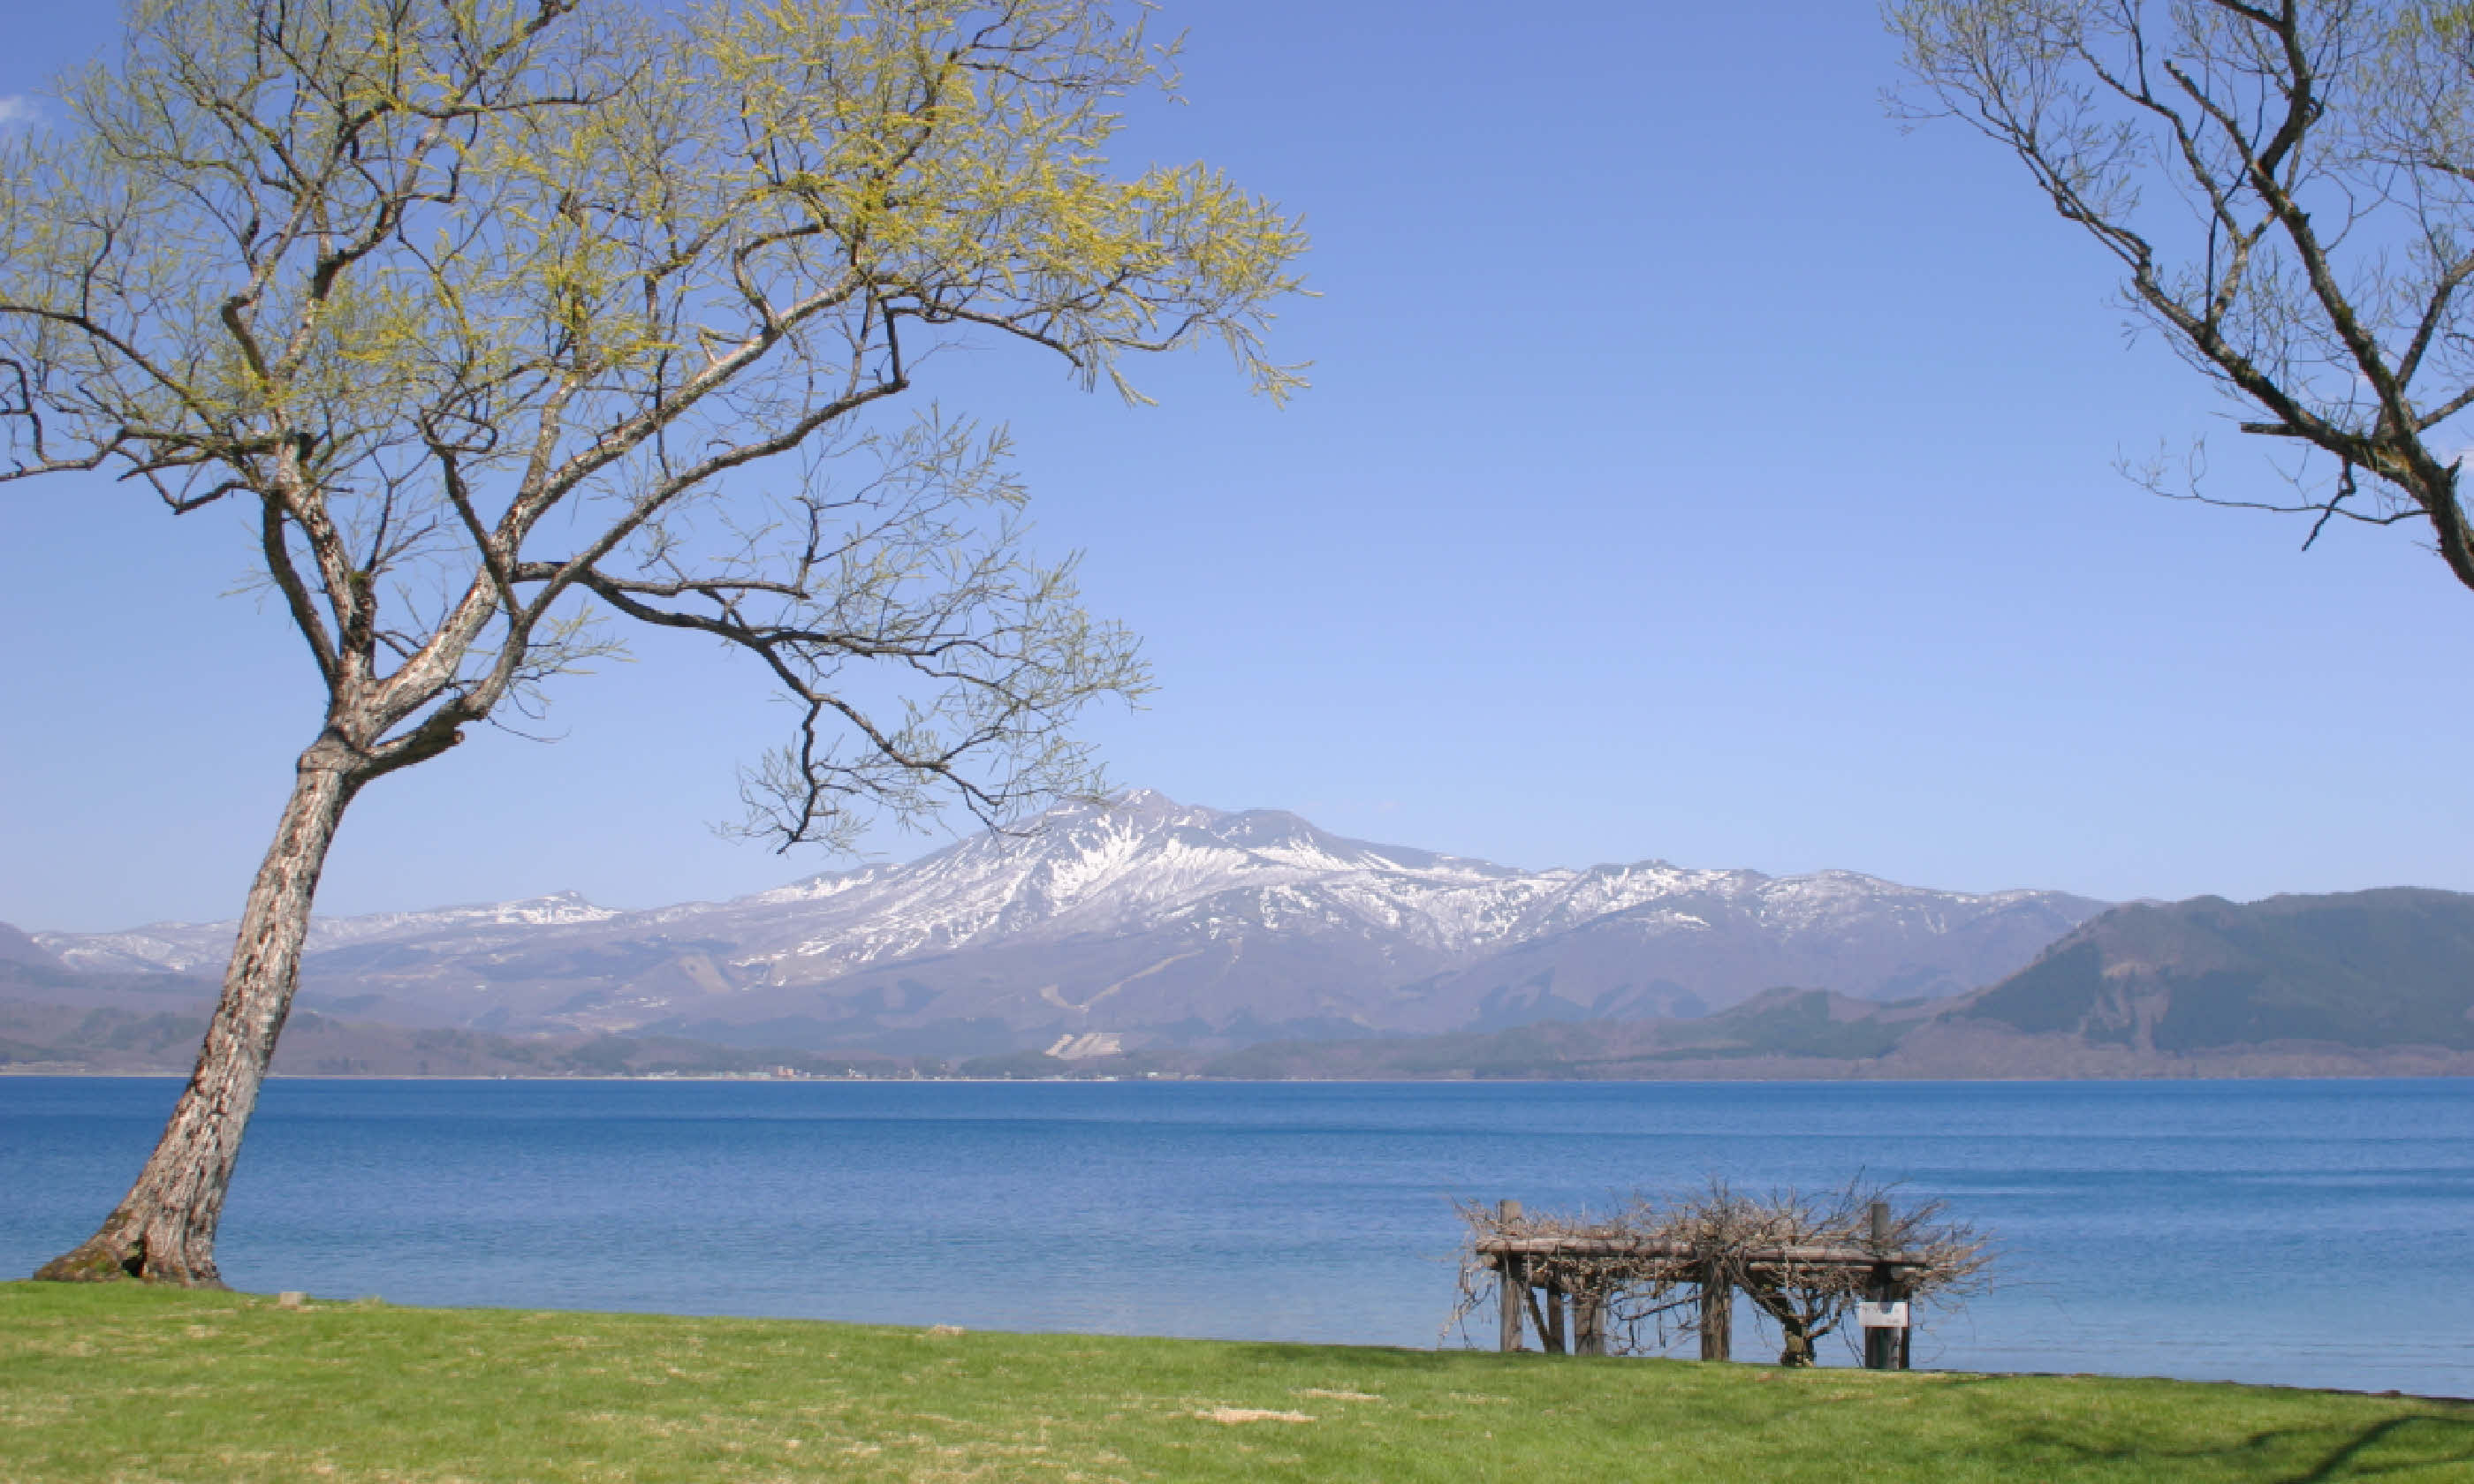 Mt. Komagatake from the shore of Tazawa lake (Shutterstock)